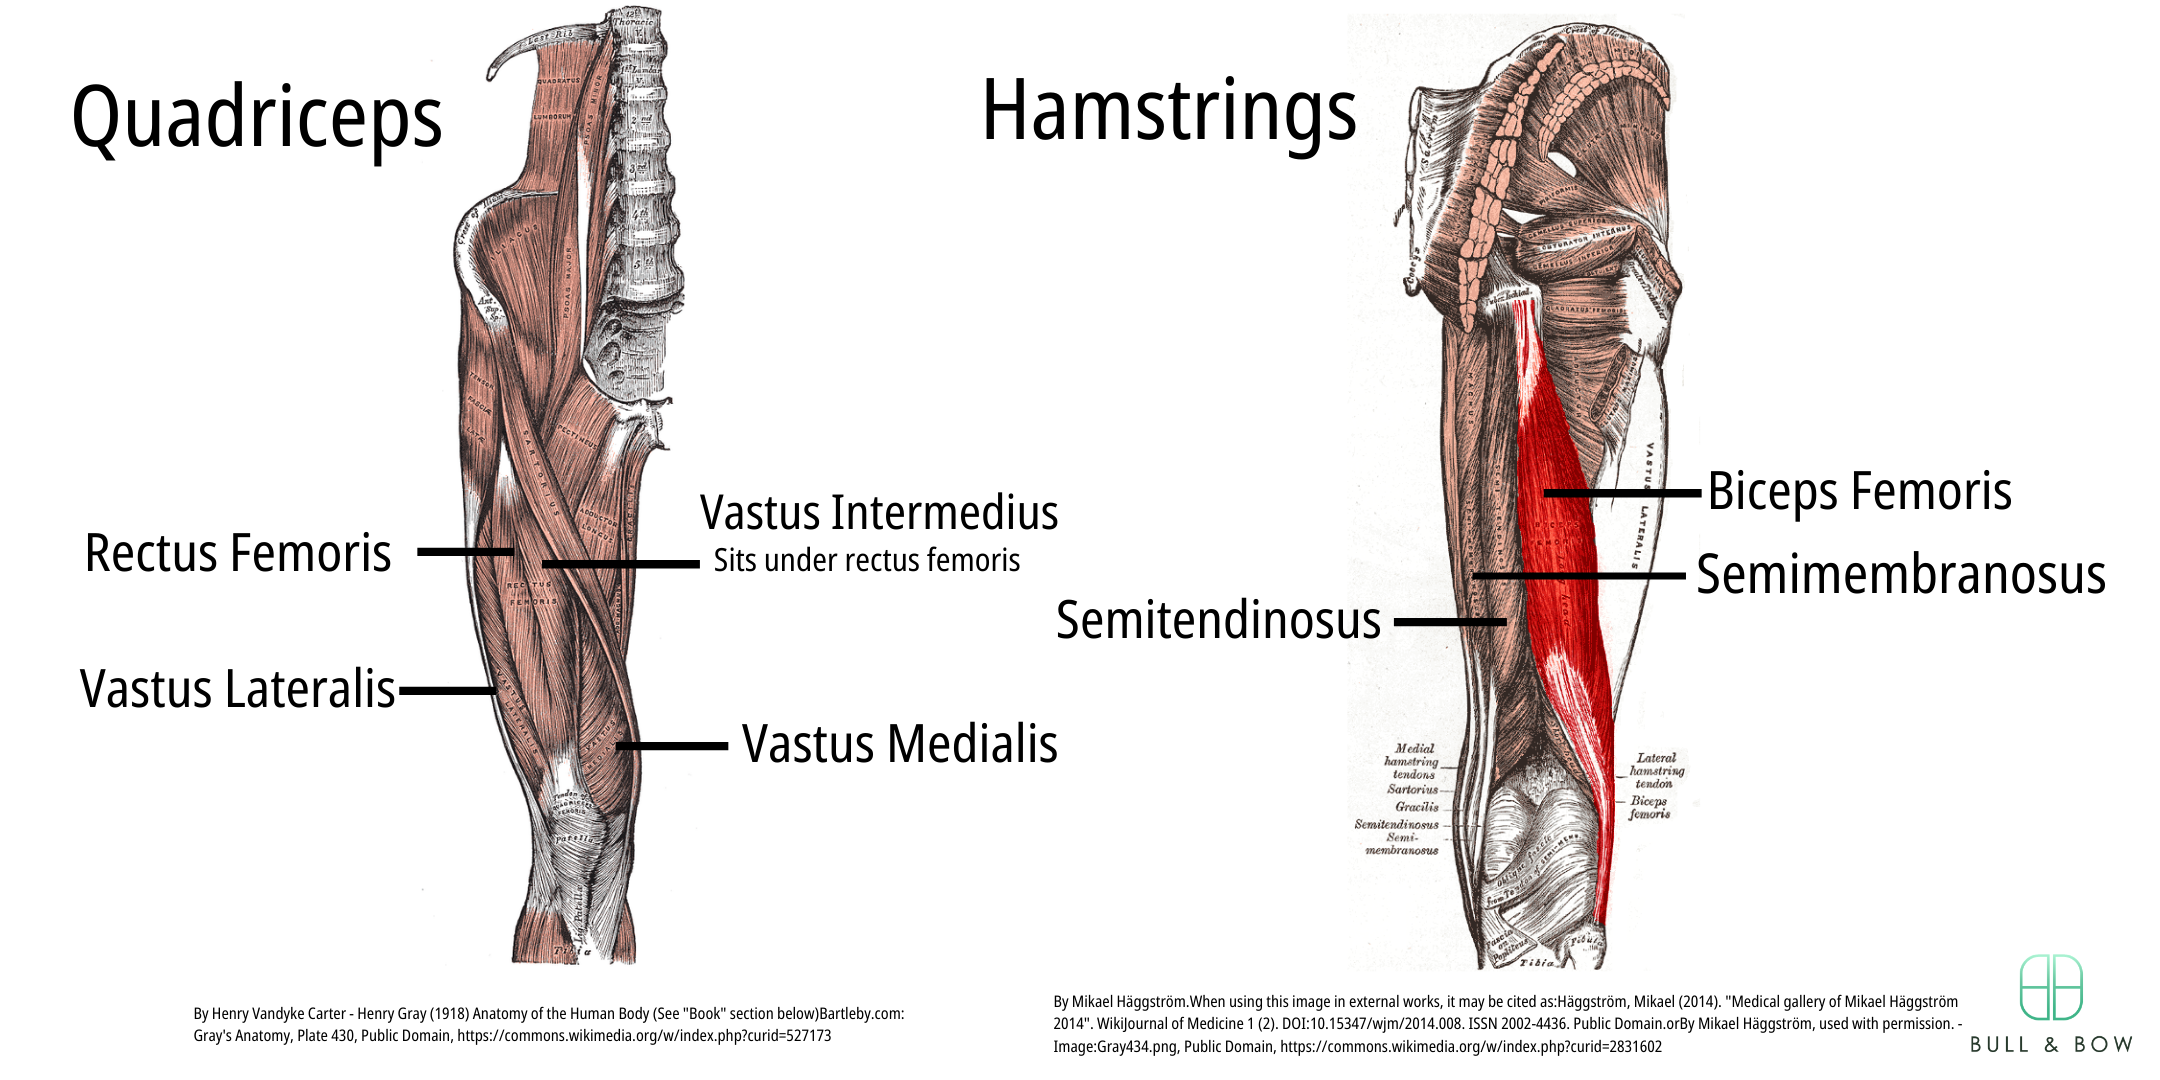 Quadricep muscles including rectus femoris, vastus medialis, vastus lateralis and vastus intermedius. Hamstring muscles including bicep femoris, semitendinosus and semimembranosus